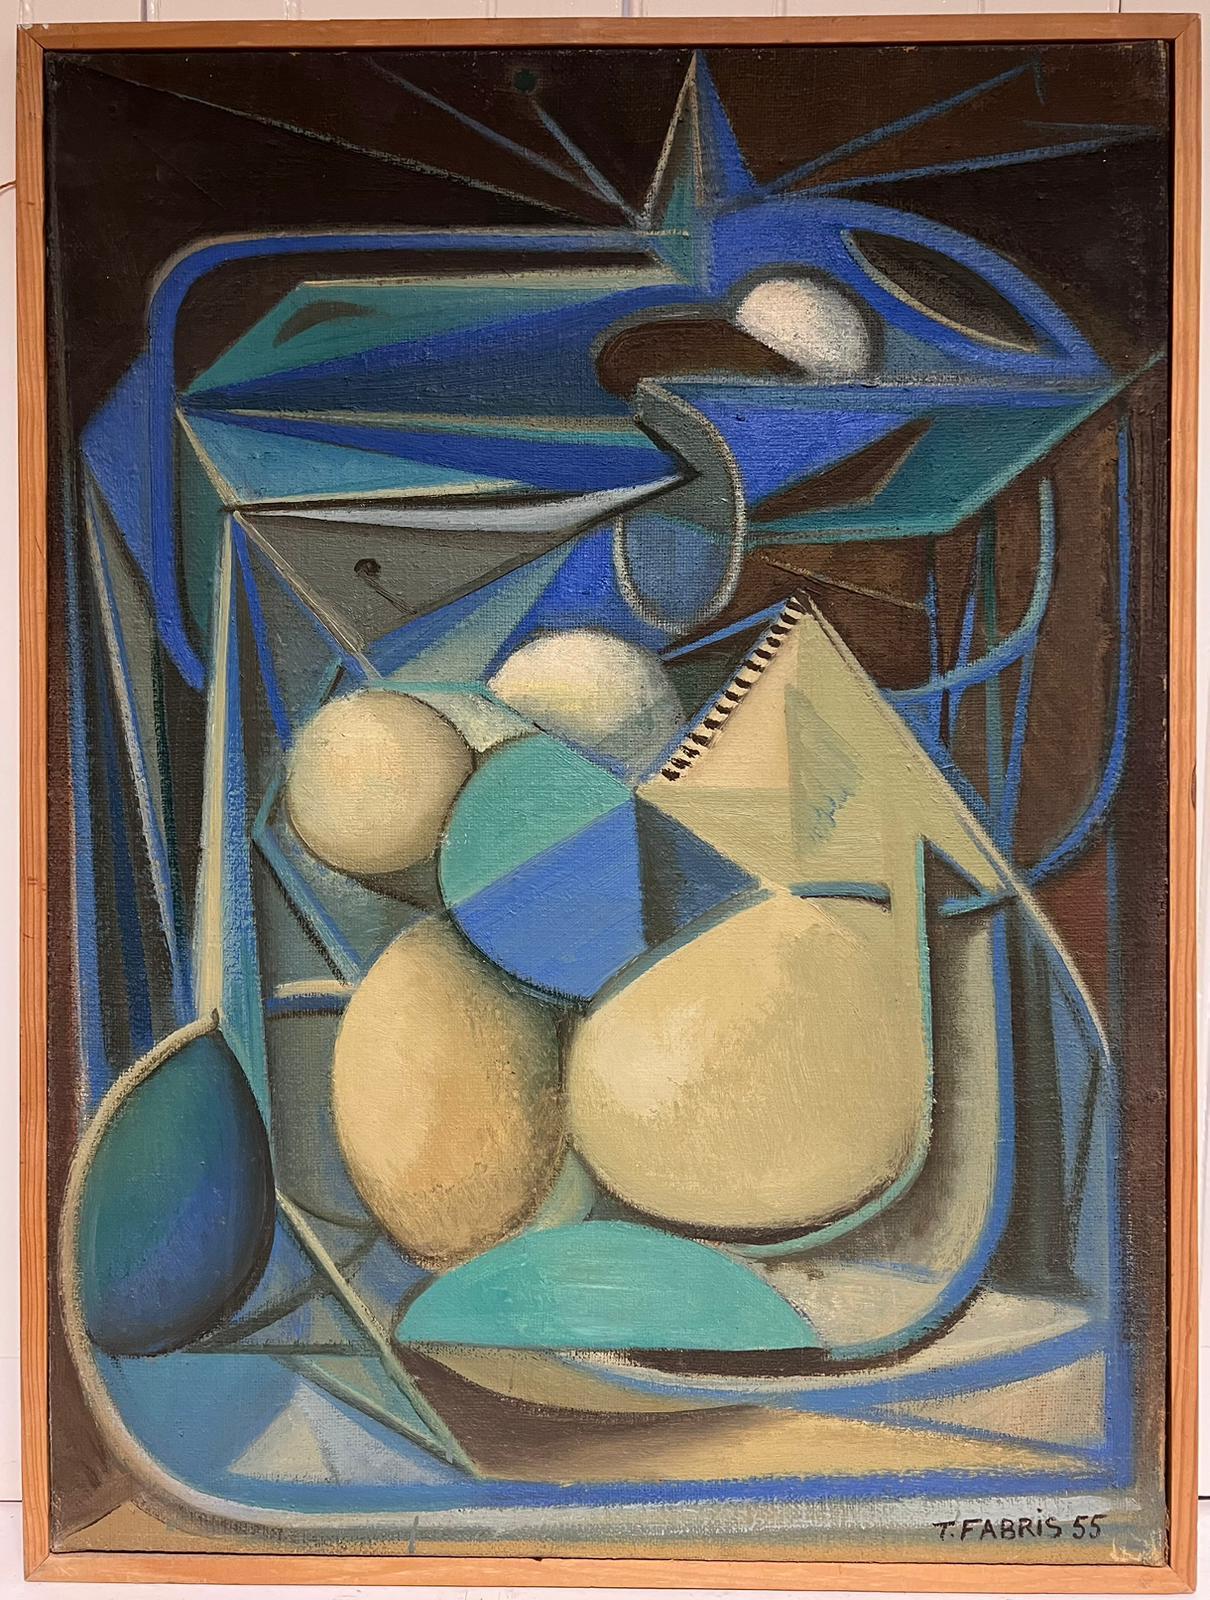 1950's Französisch Surrealist signiert Ölgemälde Kubistisch Blau Grün Creme Abstrakt – Painting von T. Fabris